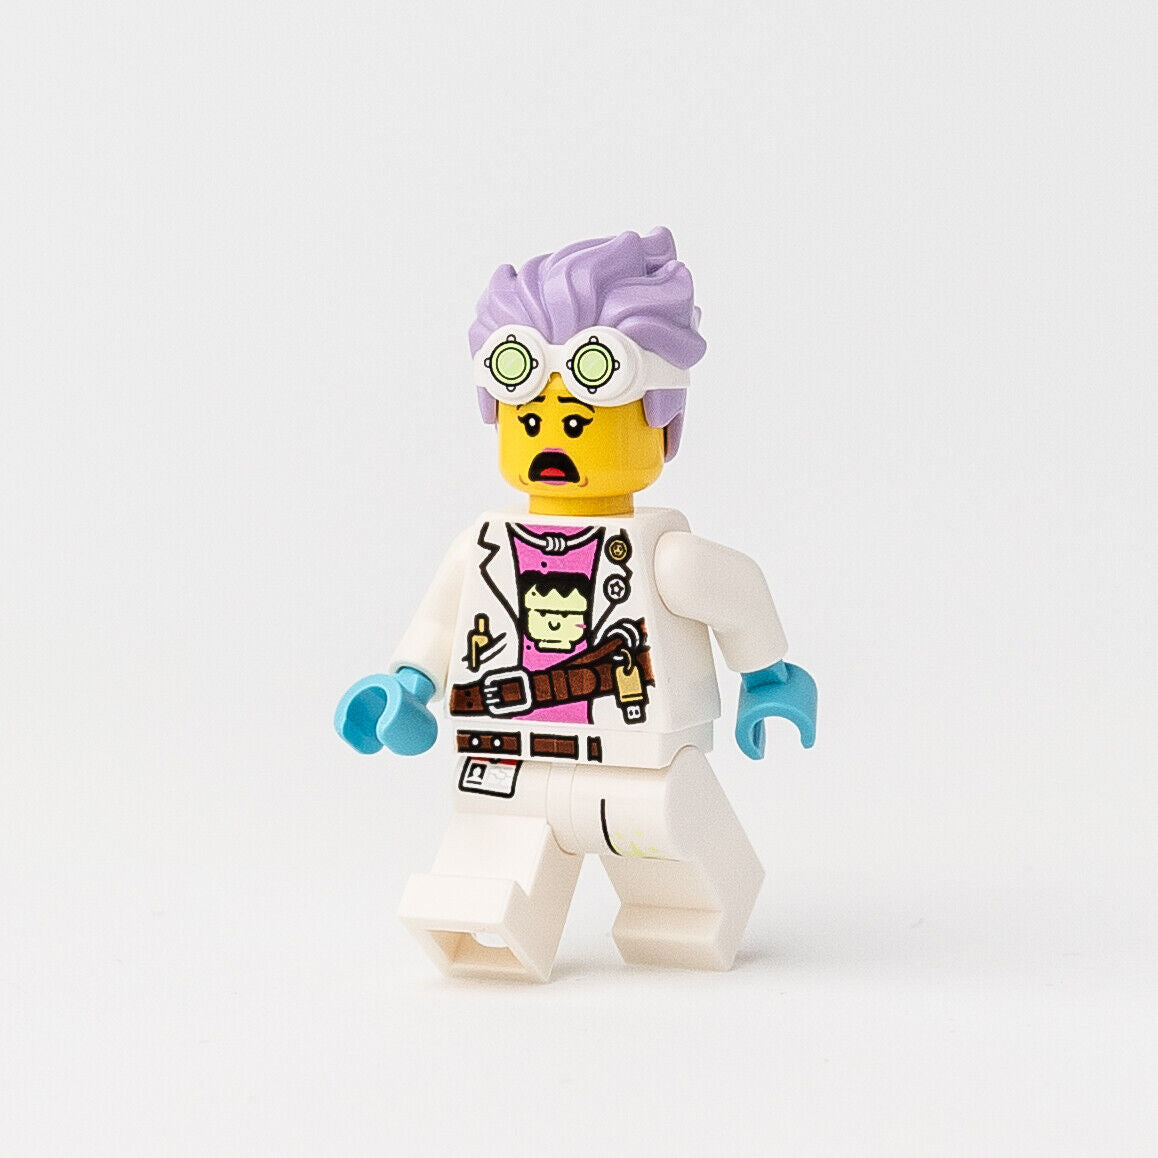 New LEGO J.B. Watt Open Smile / Scared Minifigure - Hidden Side - (hs036)